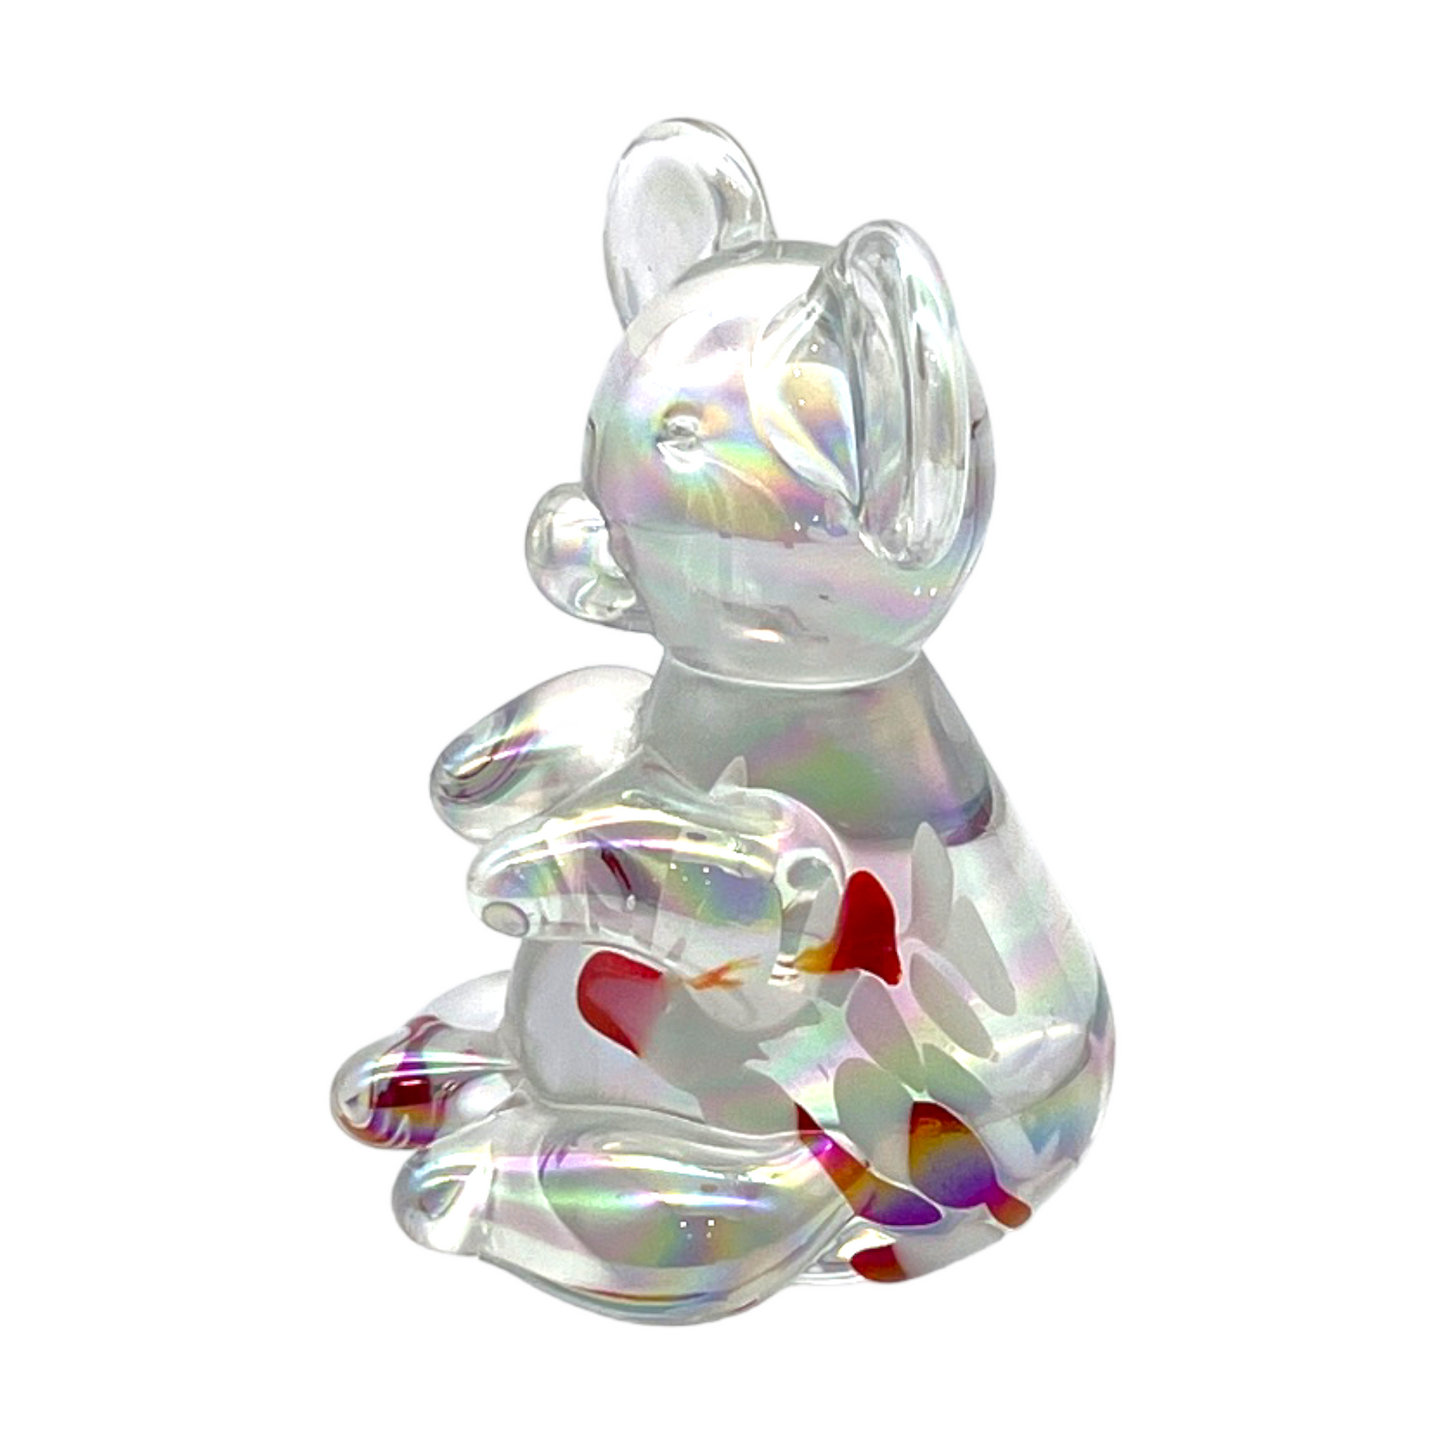 Opaline Splatter Glass Bear Sculpture - 4"